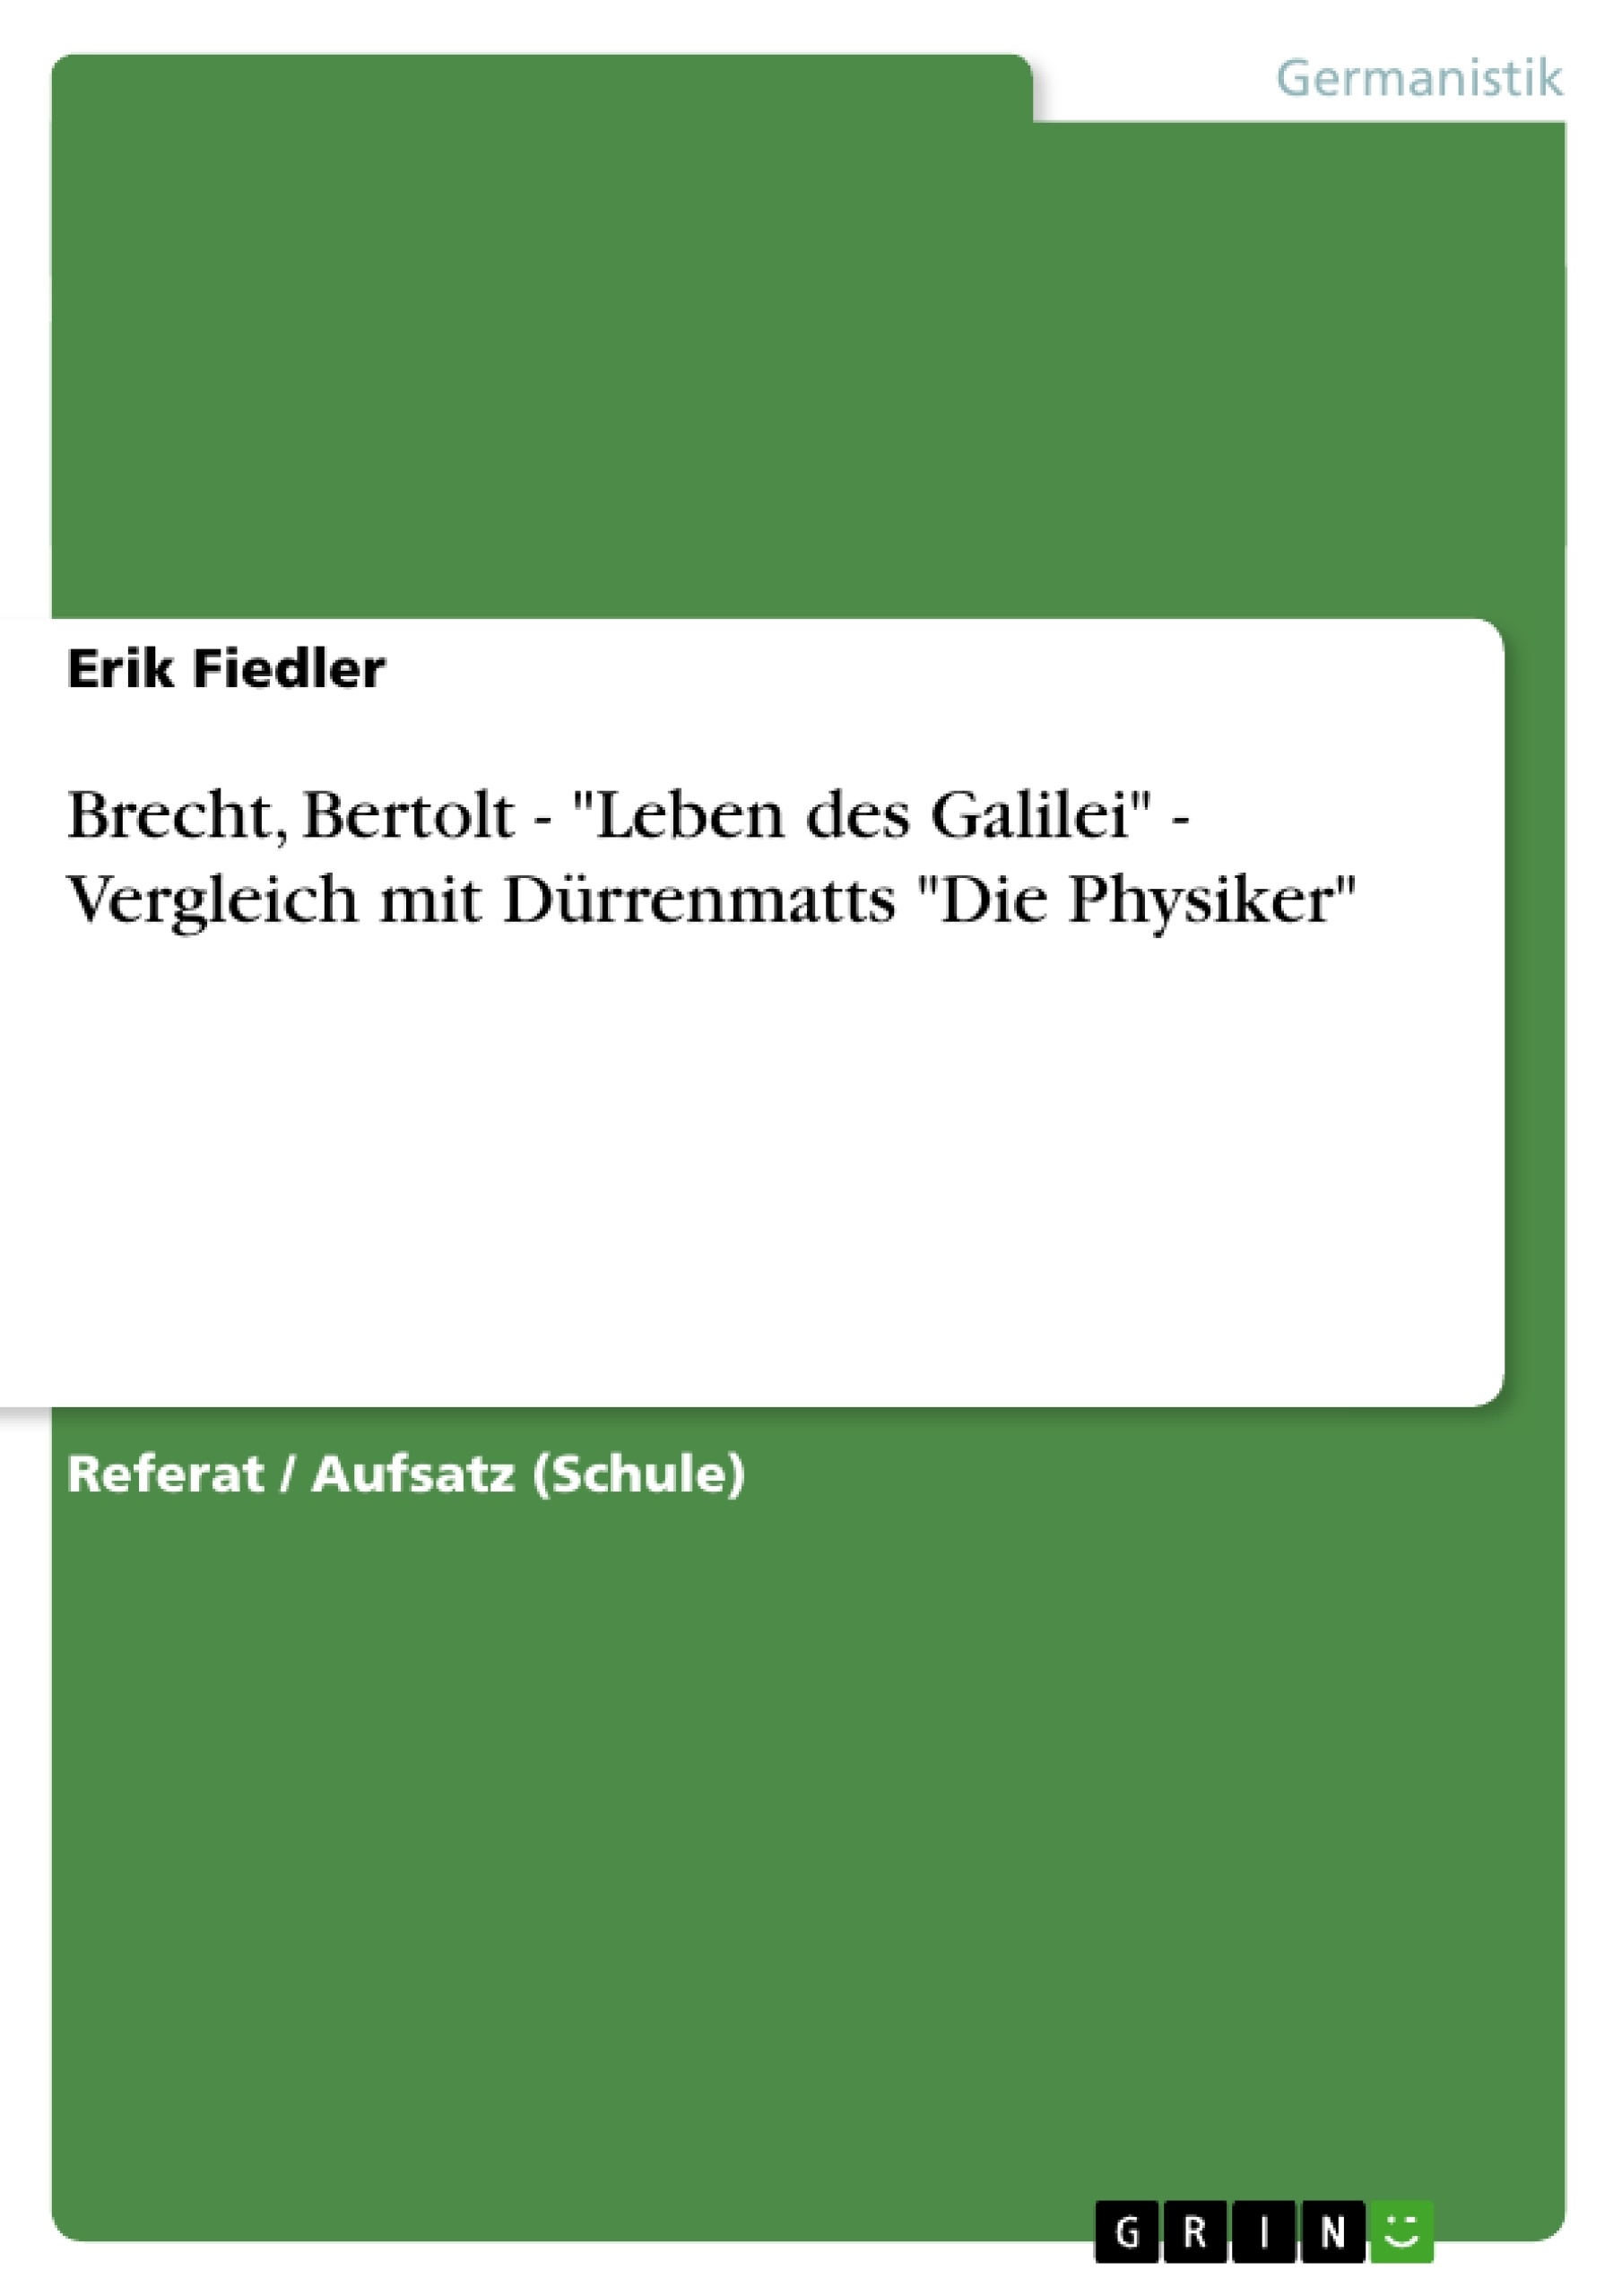 Titel: Brecht, Bertolt - "Leben des Galilei" - Vergleich mit Dürrenmatts "Die Physiker" 